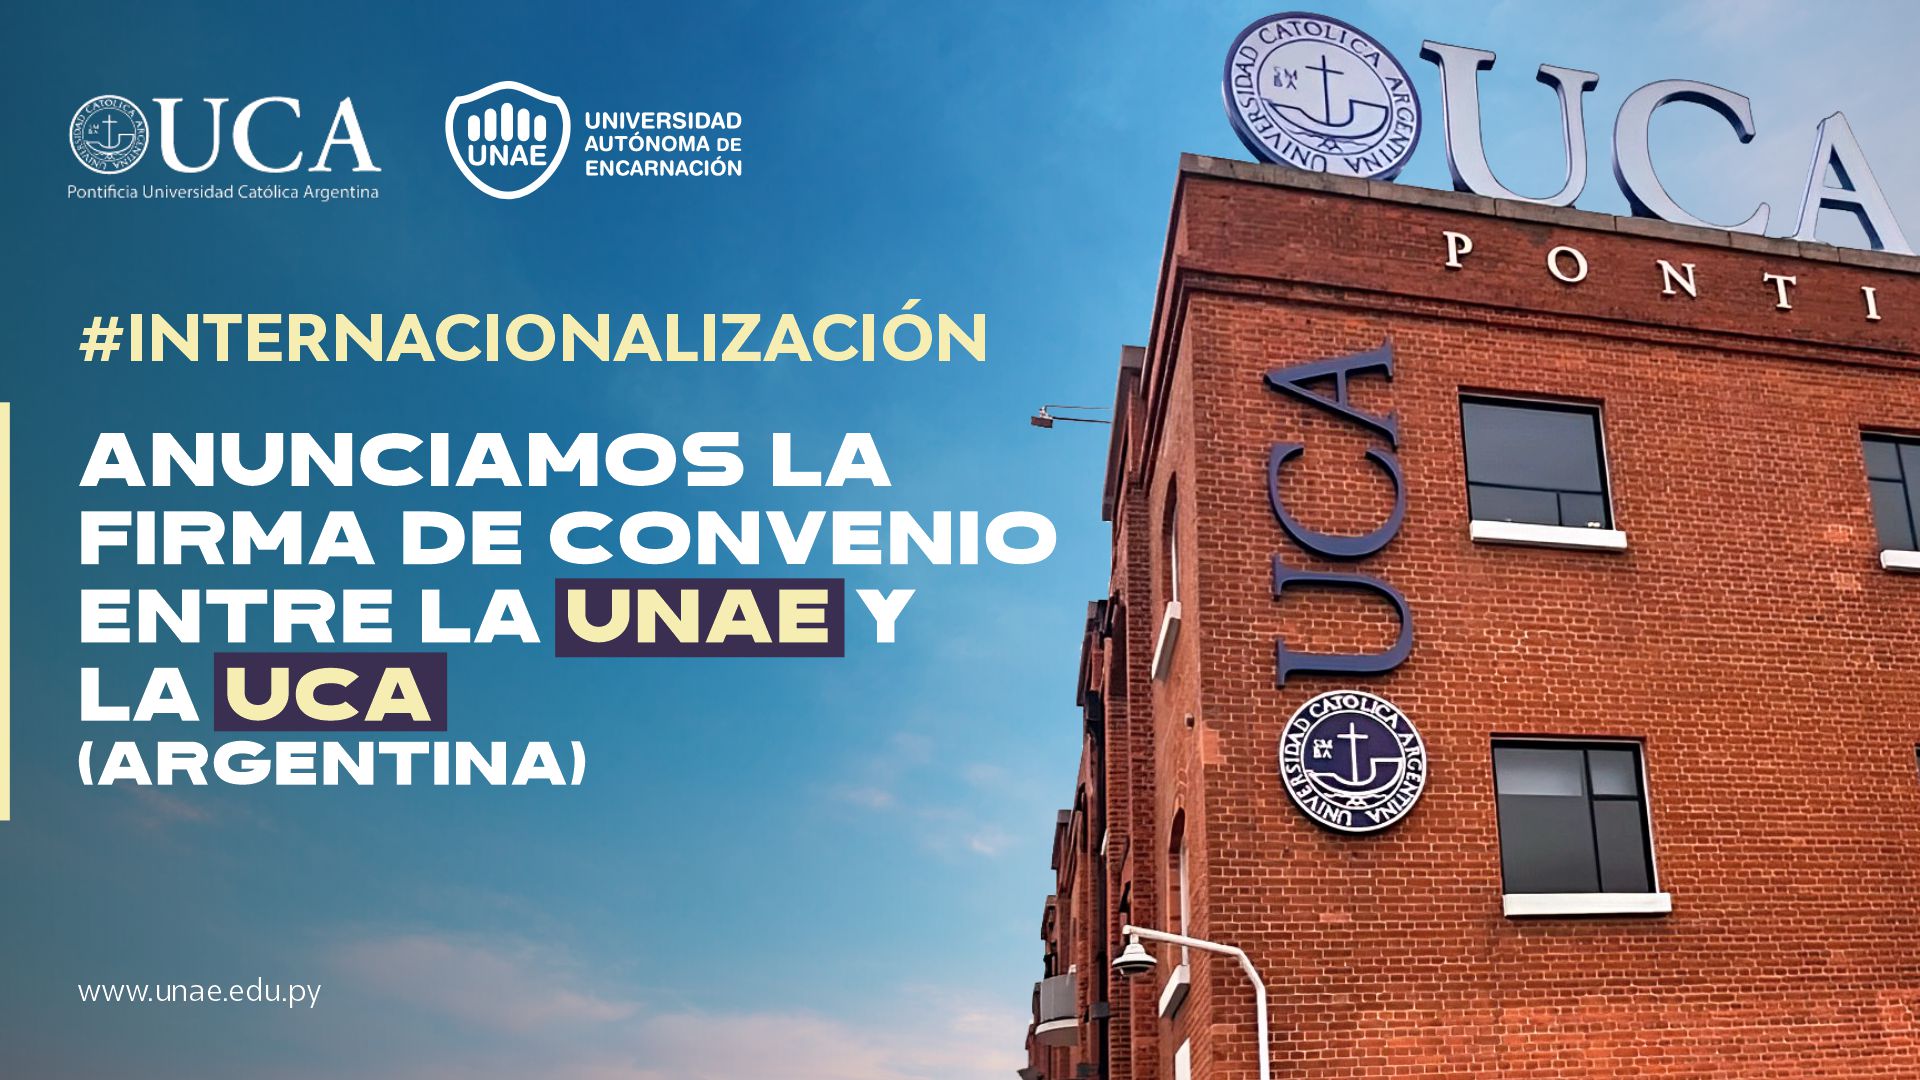 INTERNACIONALIZACIÓN: Anunciamos la firma de convenio entre la Universidad Autónoma de Encarnación UNAE y la Pontificia Universidad Católica Argentina UCA